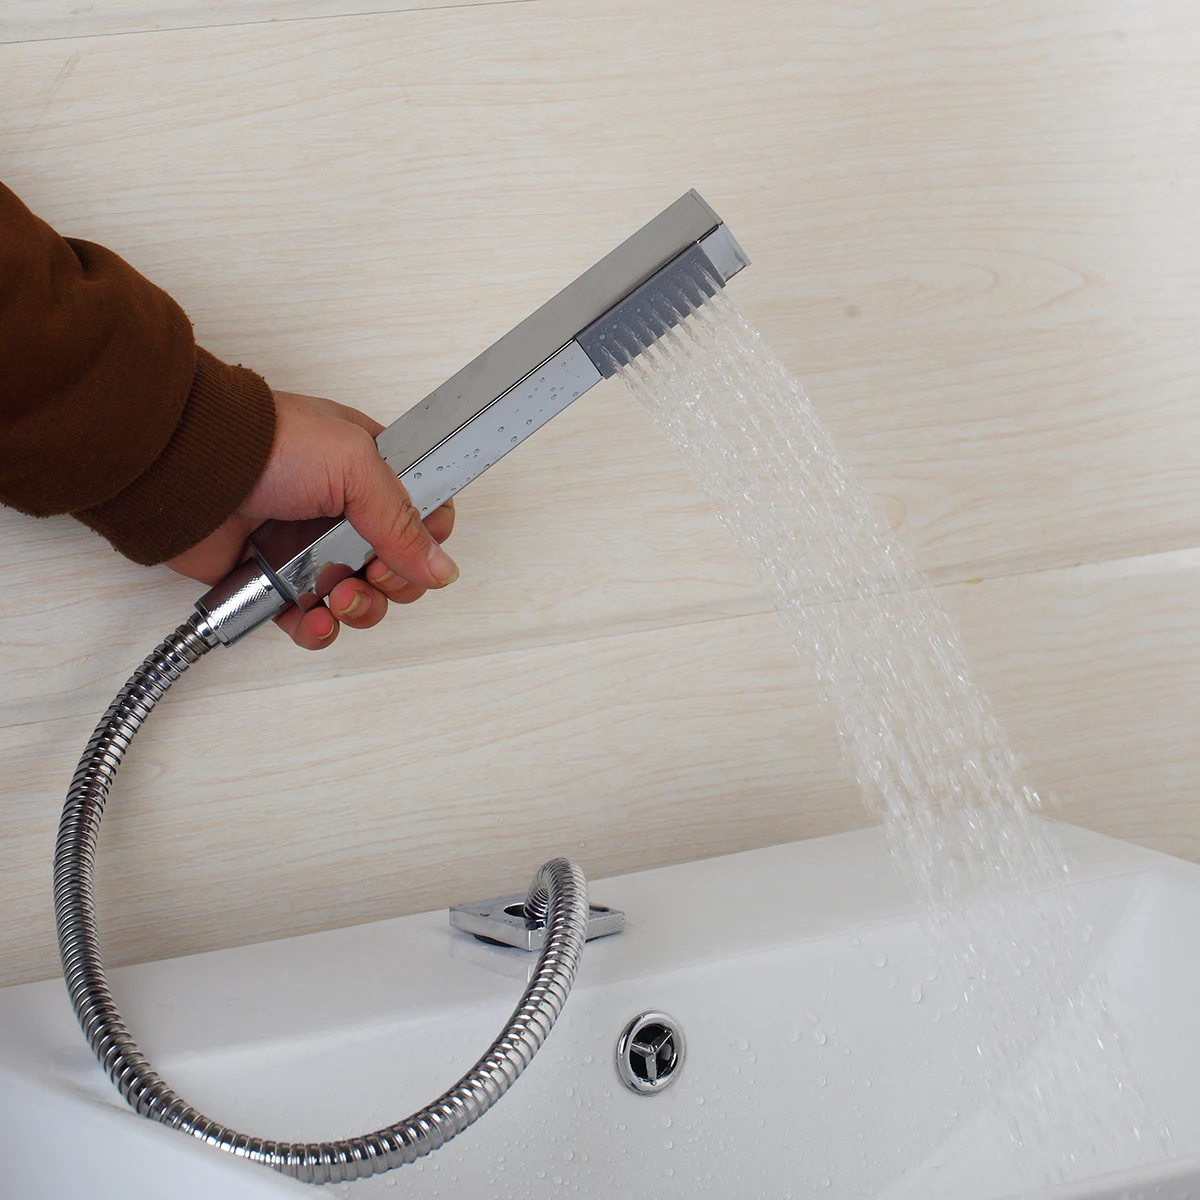 JIENI твердая латунь 5 шт. водосточная кран для ванной комнаты Набор крышки клапана ручной душ настенное крепление хромированная отделка